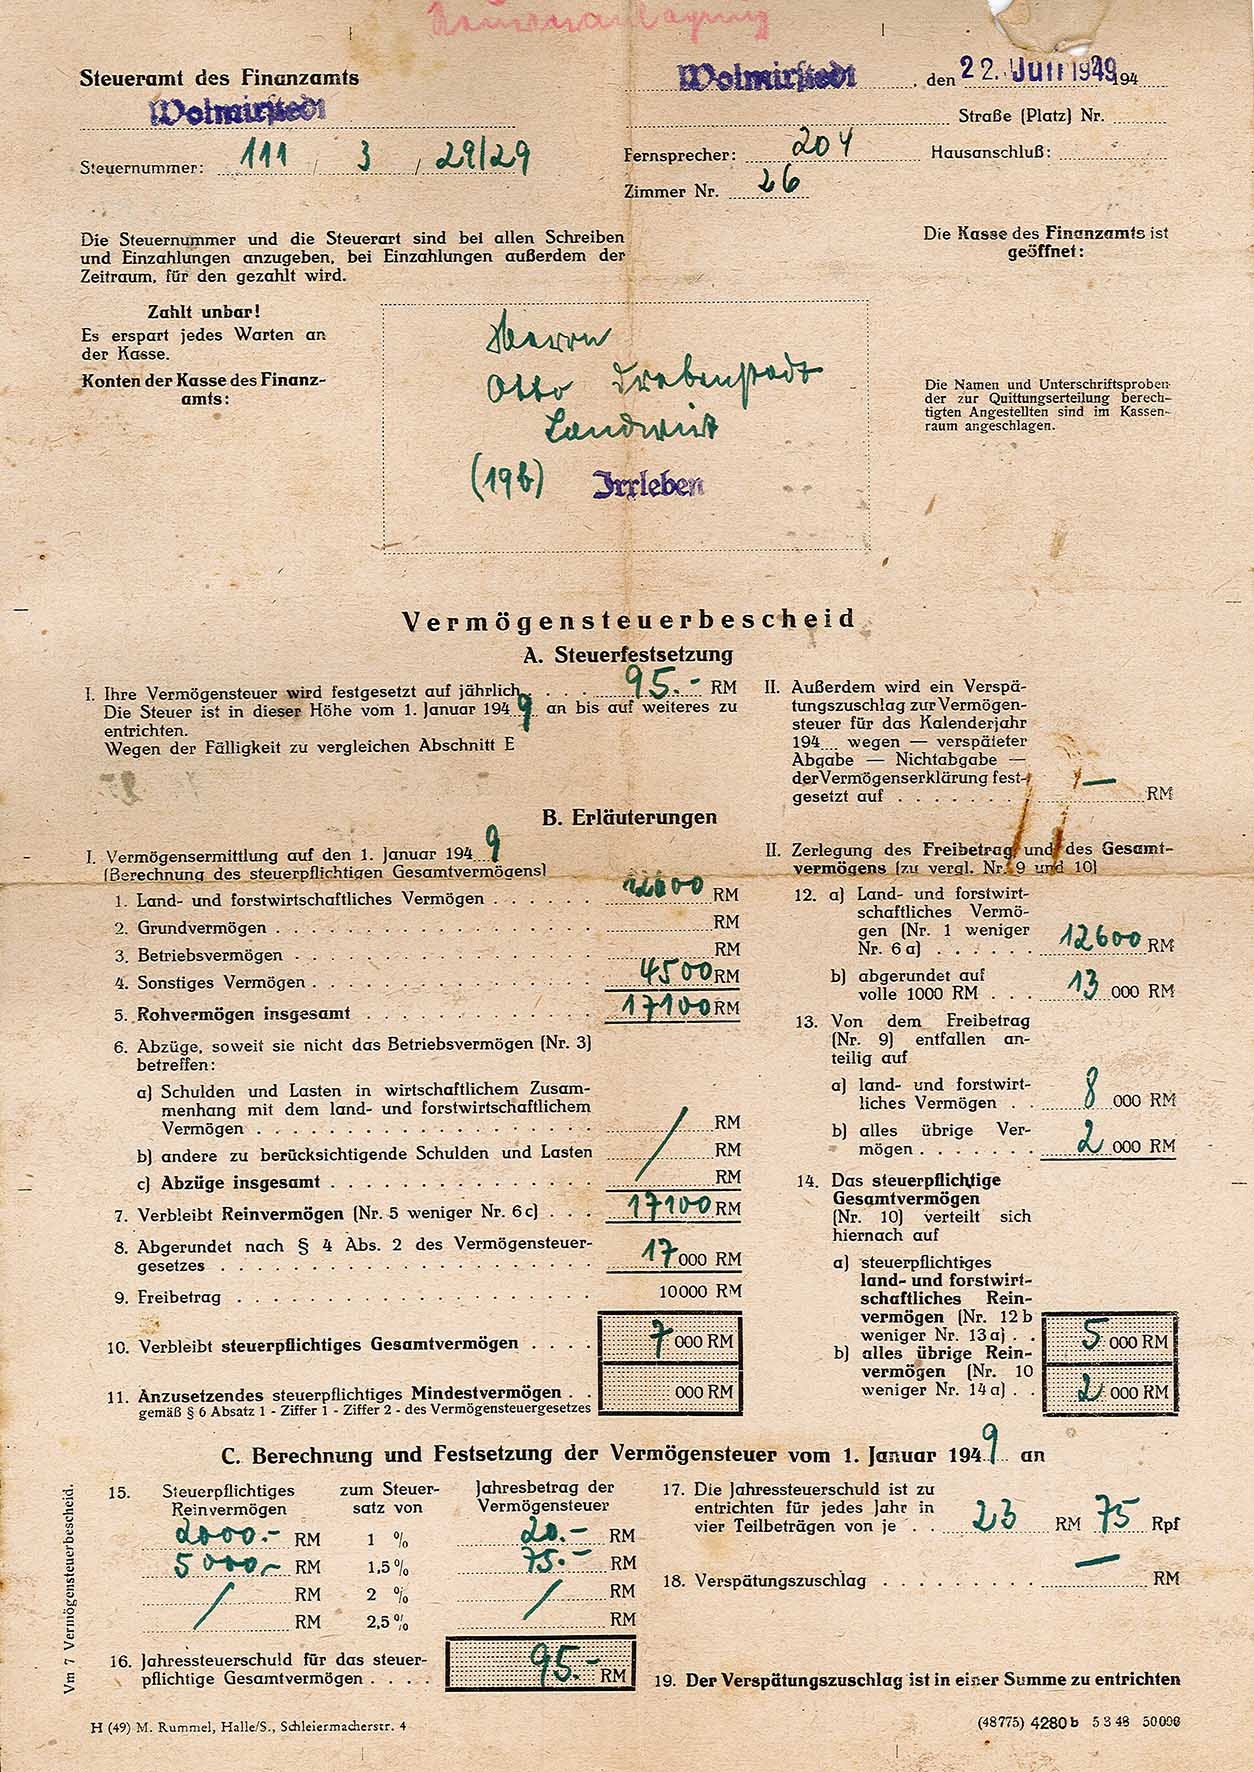 Vermögenssteuerbescheid für Otto Drebenstedt für das Jahr 1949, 22. Juli 1949 (Museum Wolmirstedt RR-F)